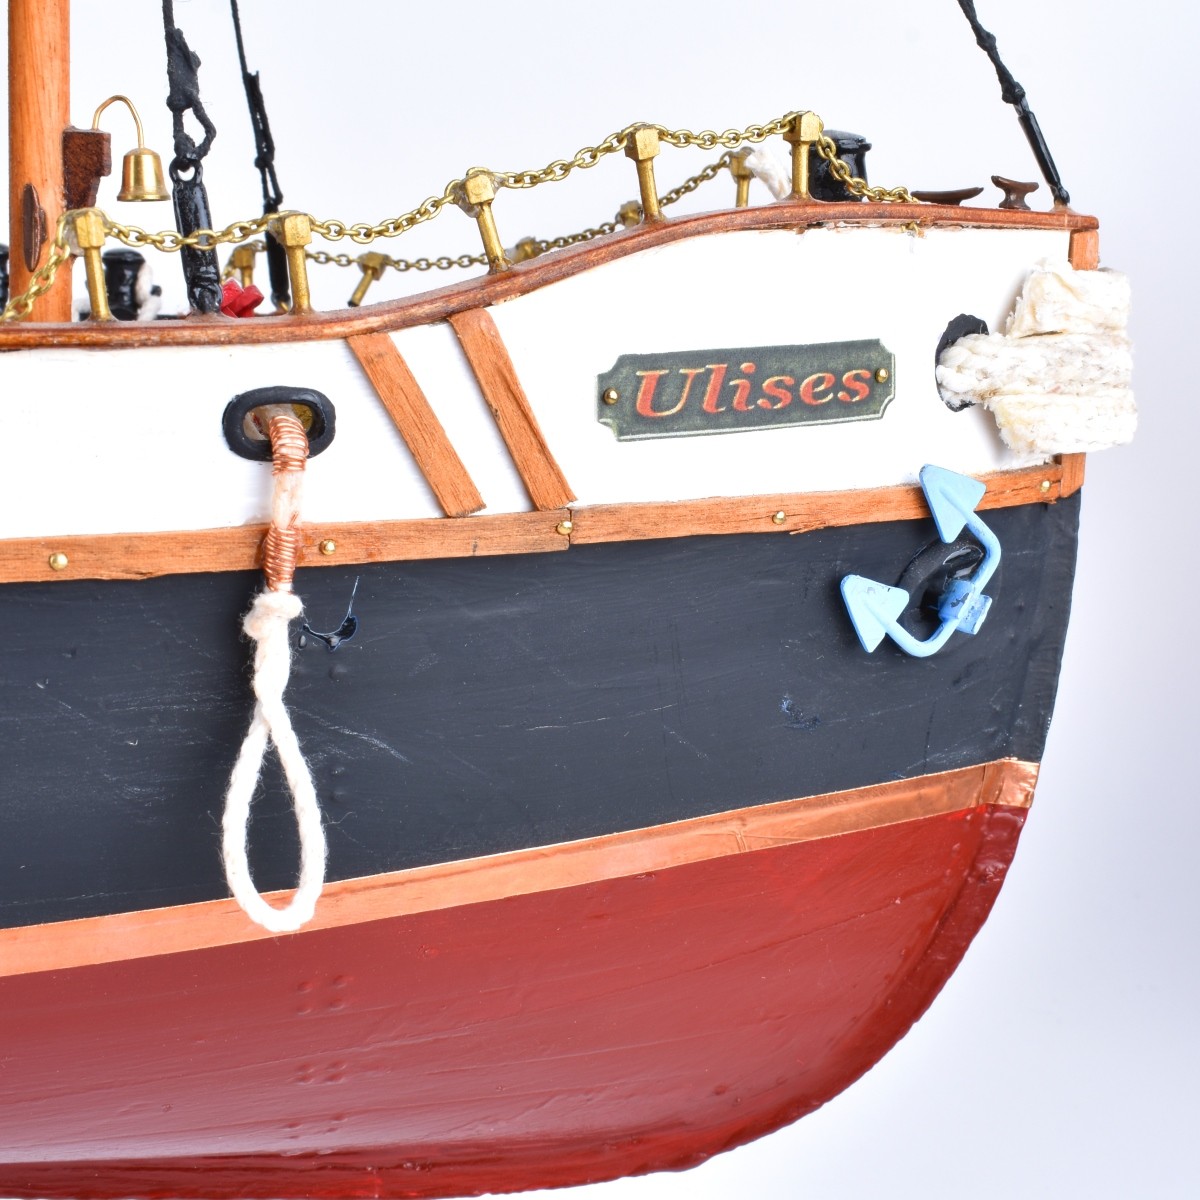 Model Tug Boat